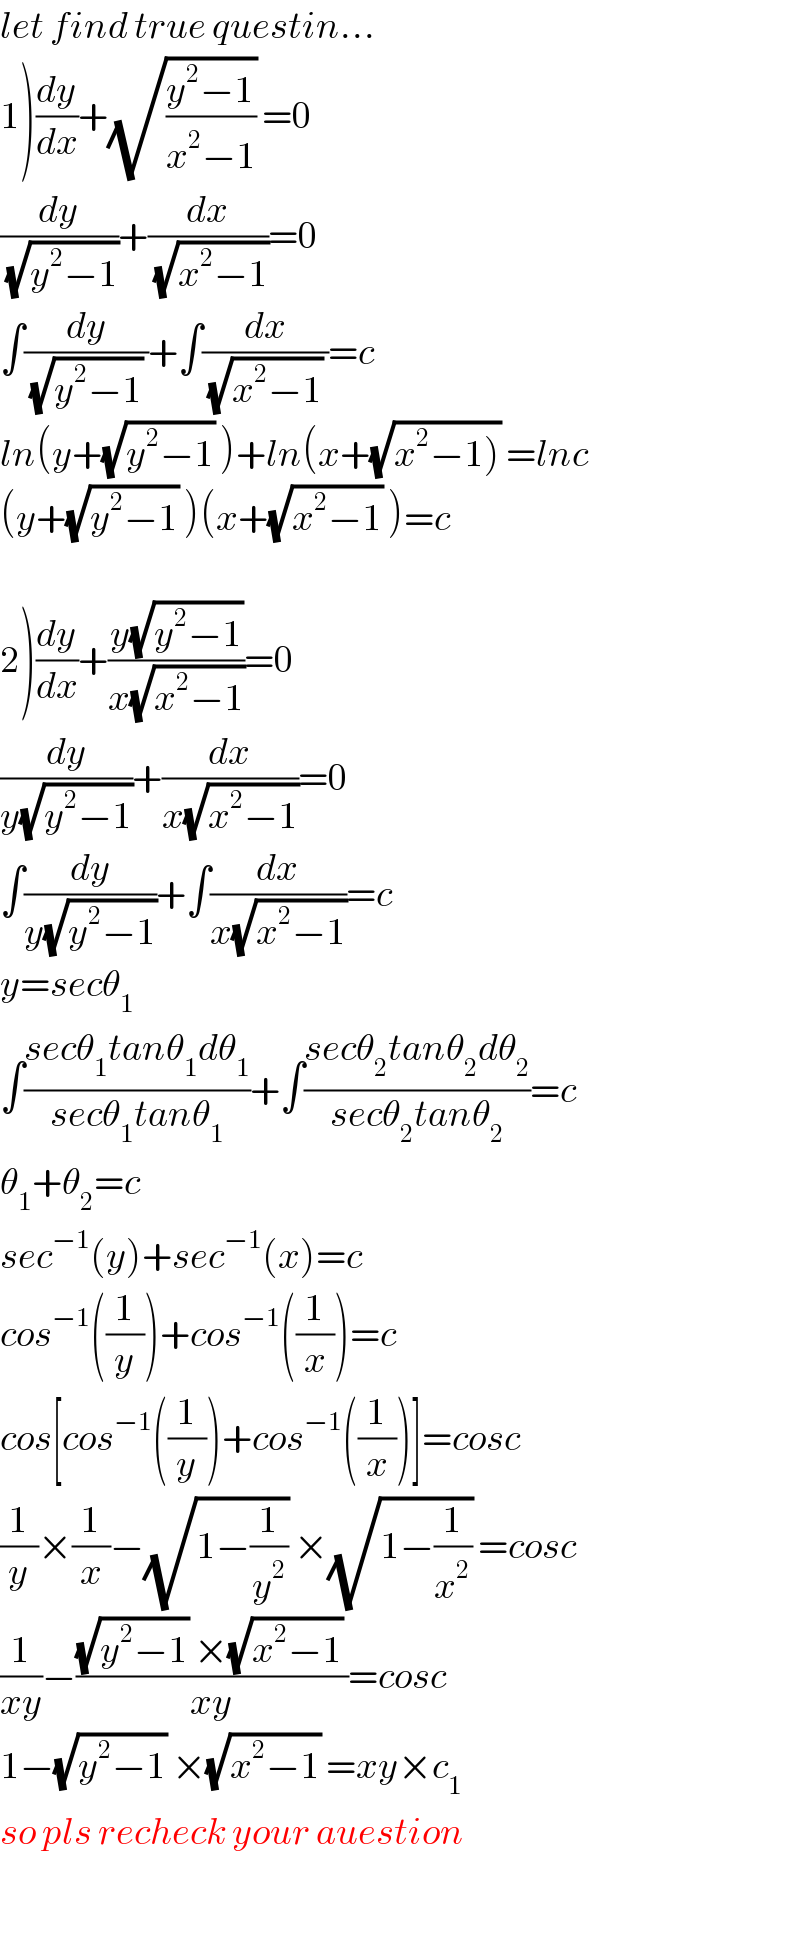 let find true questin...  1)(dy/dx)+(√((y^2 −1)/(x^2 −1))) =0  (dy/(√(y^2 −1)))+(dx/(√(x^2 −1)))=0  ∫(dy/((√(y^2 −1)) ))+∫(dx/((√(x^2 −1)) ))=c  ln(y+(√(y^2 −1)) )+ln(x+(√(x^2 −1))) =lnc  (y+(√(y^2 −1)) )(x+(√(x^2 −1)) )=c    2)(dy/dx)+((y(√(y^2 −1)))/(x(√(x^2 −1))))=0  (dy/(y(√(y^2 −1))))+(dx/(x(√(x^2 −1))))=0  ∫(dy/(y(√(y^2 −1))))+∫(dx/(x(√(x^2 −1))))=c  y=secθ_1   ∫((secθ_1 tanθ_1 dθ_1 )/(secθ_1 tanθ_1 ))+∫((secθ_2 tanθ_2 dθ_2 )/(secθ_2 tanθ_2 ))=c  θ_1 +θ_2 =c  sec^(−1) (y)+sec^(−1) (x)=c  cos^(−1) ((1/y))+cos^(−1) ((1/x))=c  cos[cos^(−1) ((1/y))+cos^(−1) ((1/x))]=cosc  (1/y)×(1/x)−(√(1−(1/y^2 ))) ×(√(1−(1/x^2 ))) =cosc  (1/(xy))−(((√(y^2 −1)) ×(√(x^2 −1)) )/(xy))=cosc  1−(√(y^2 −1)) ×(√(x^2 −1)) =xy×c_1   so pls recheck your auestion    